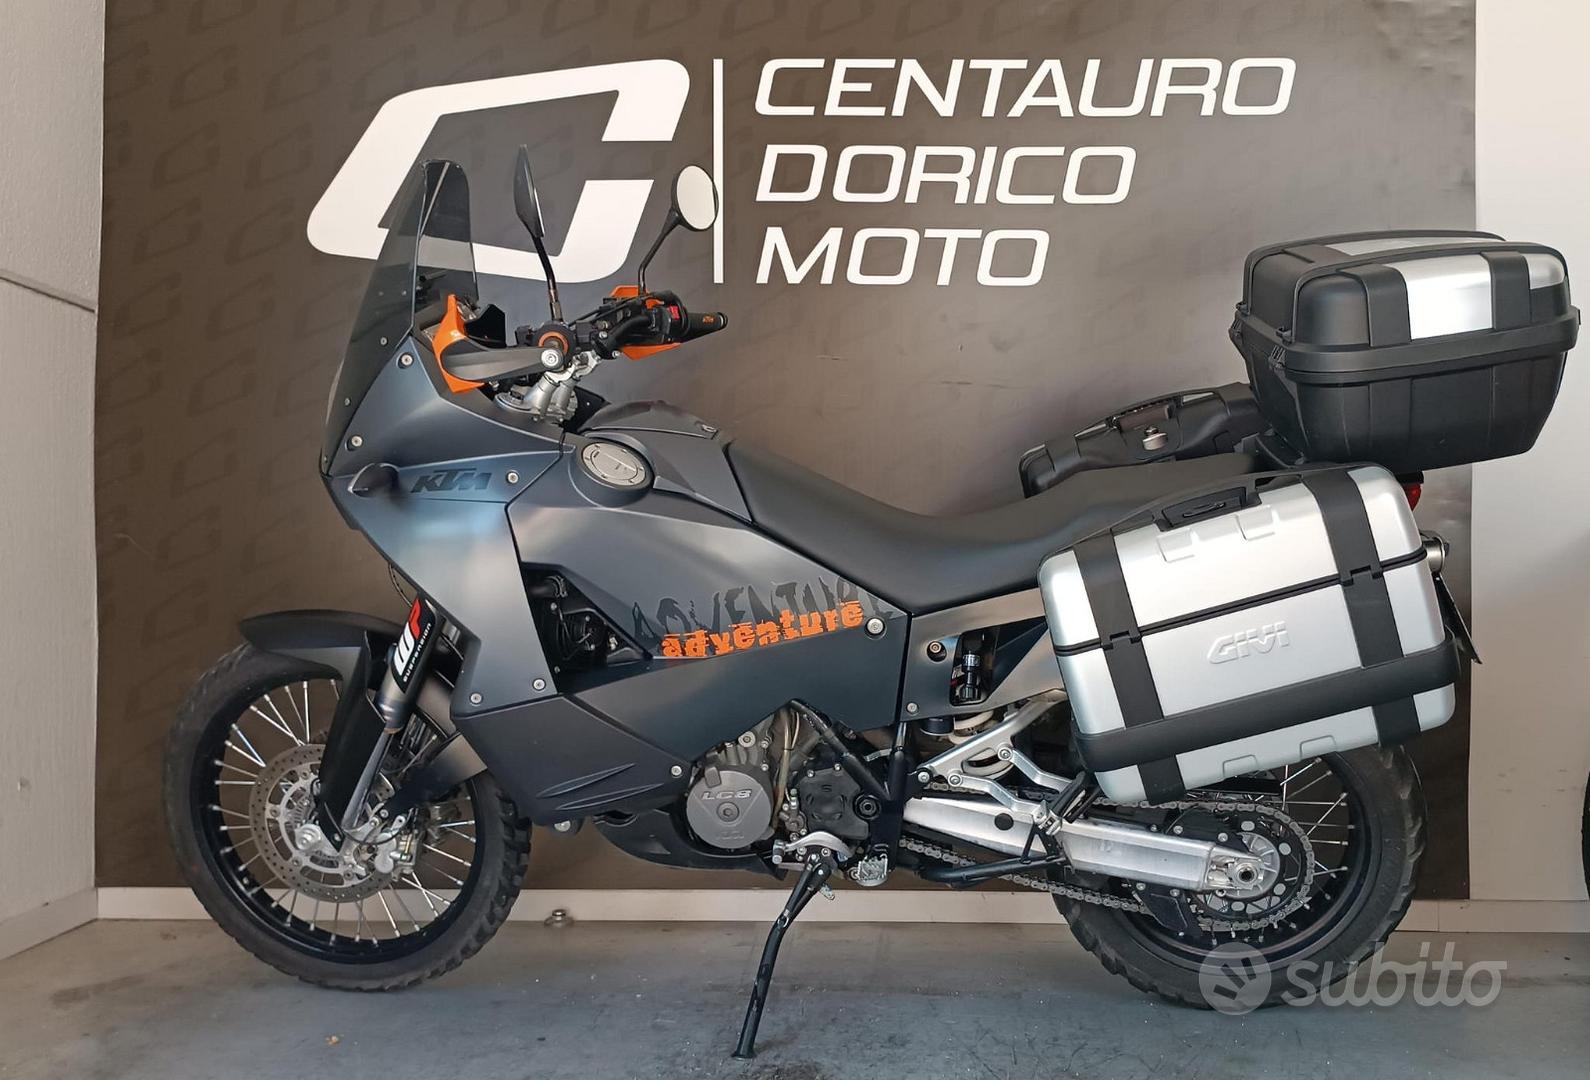 Subito - Centauro Dorico Moto Srls - KTM 990 Adventure - 2006 - Moto e  Scooter In vendita a Ancona